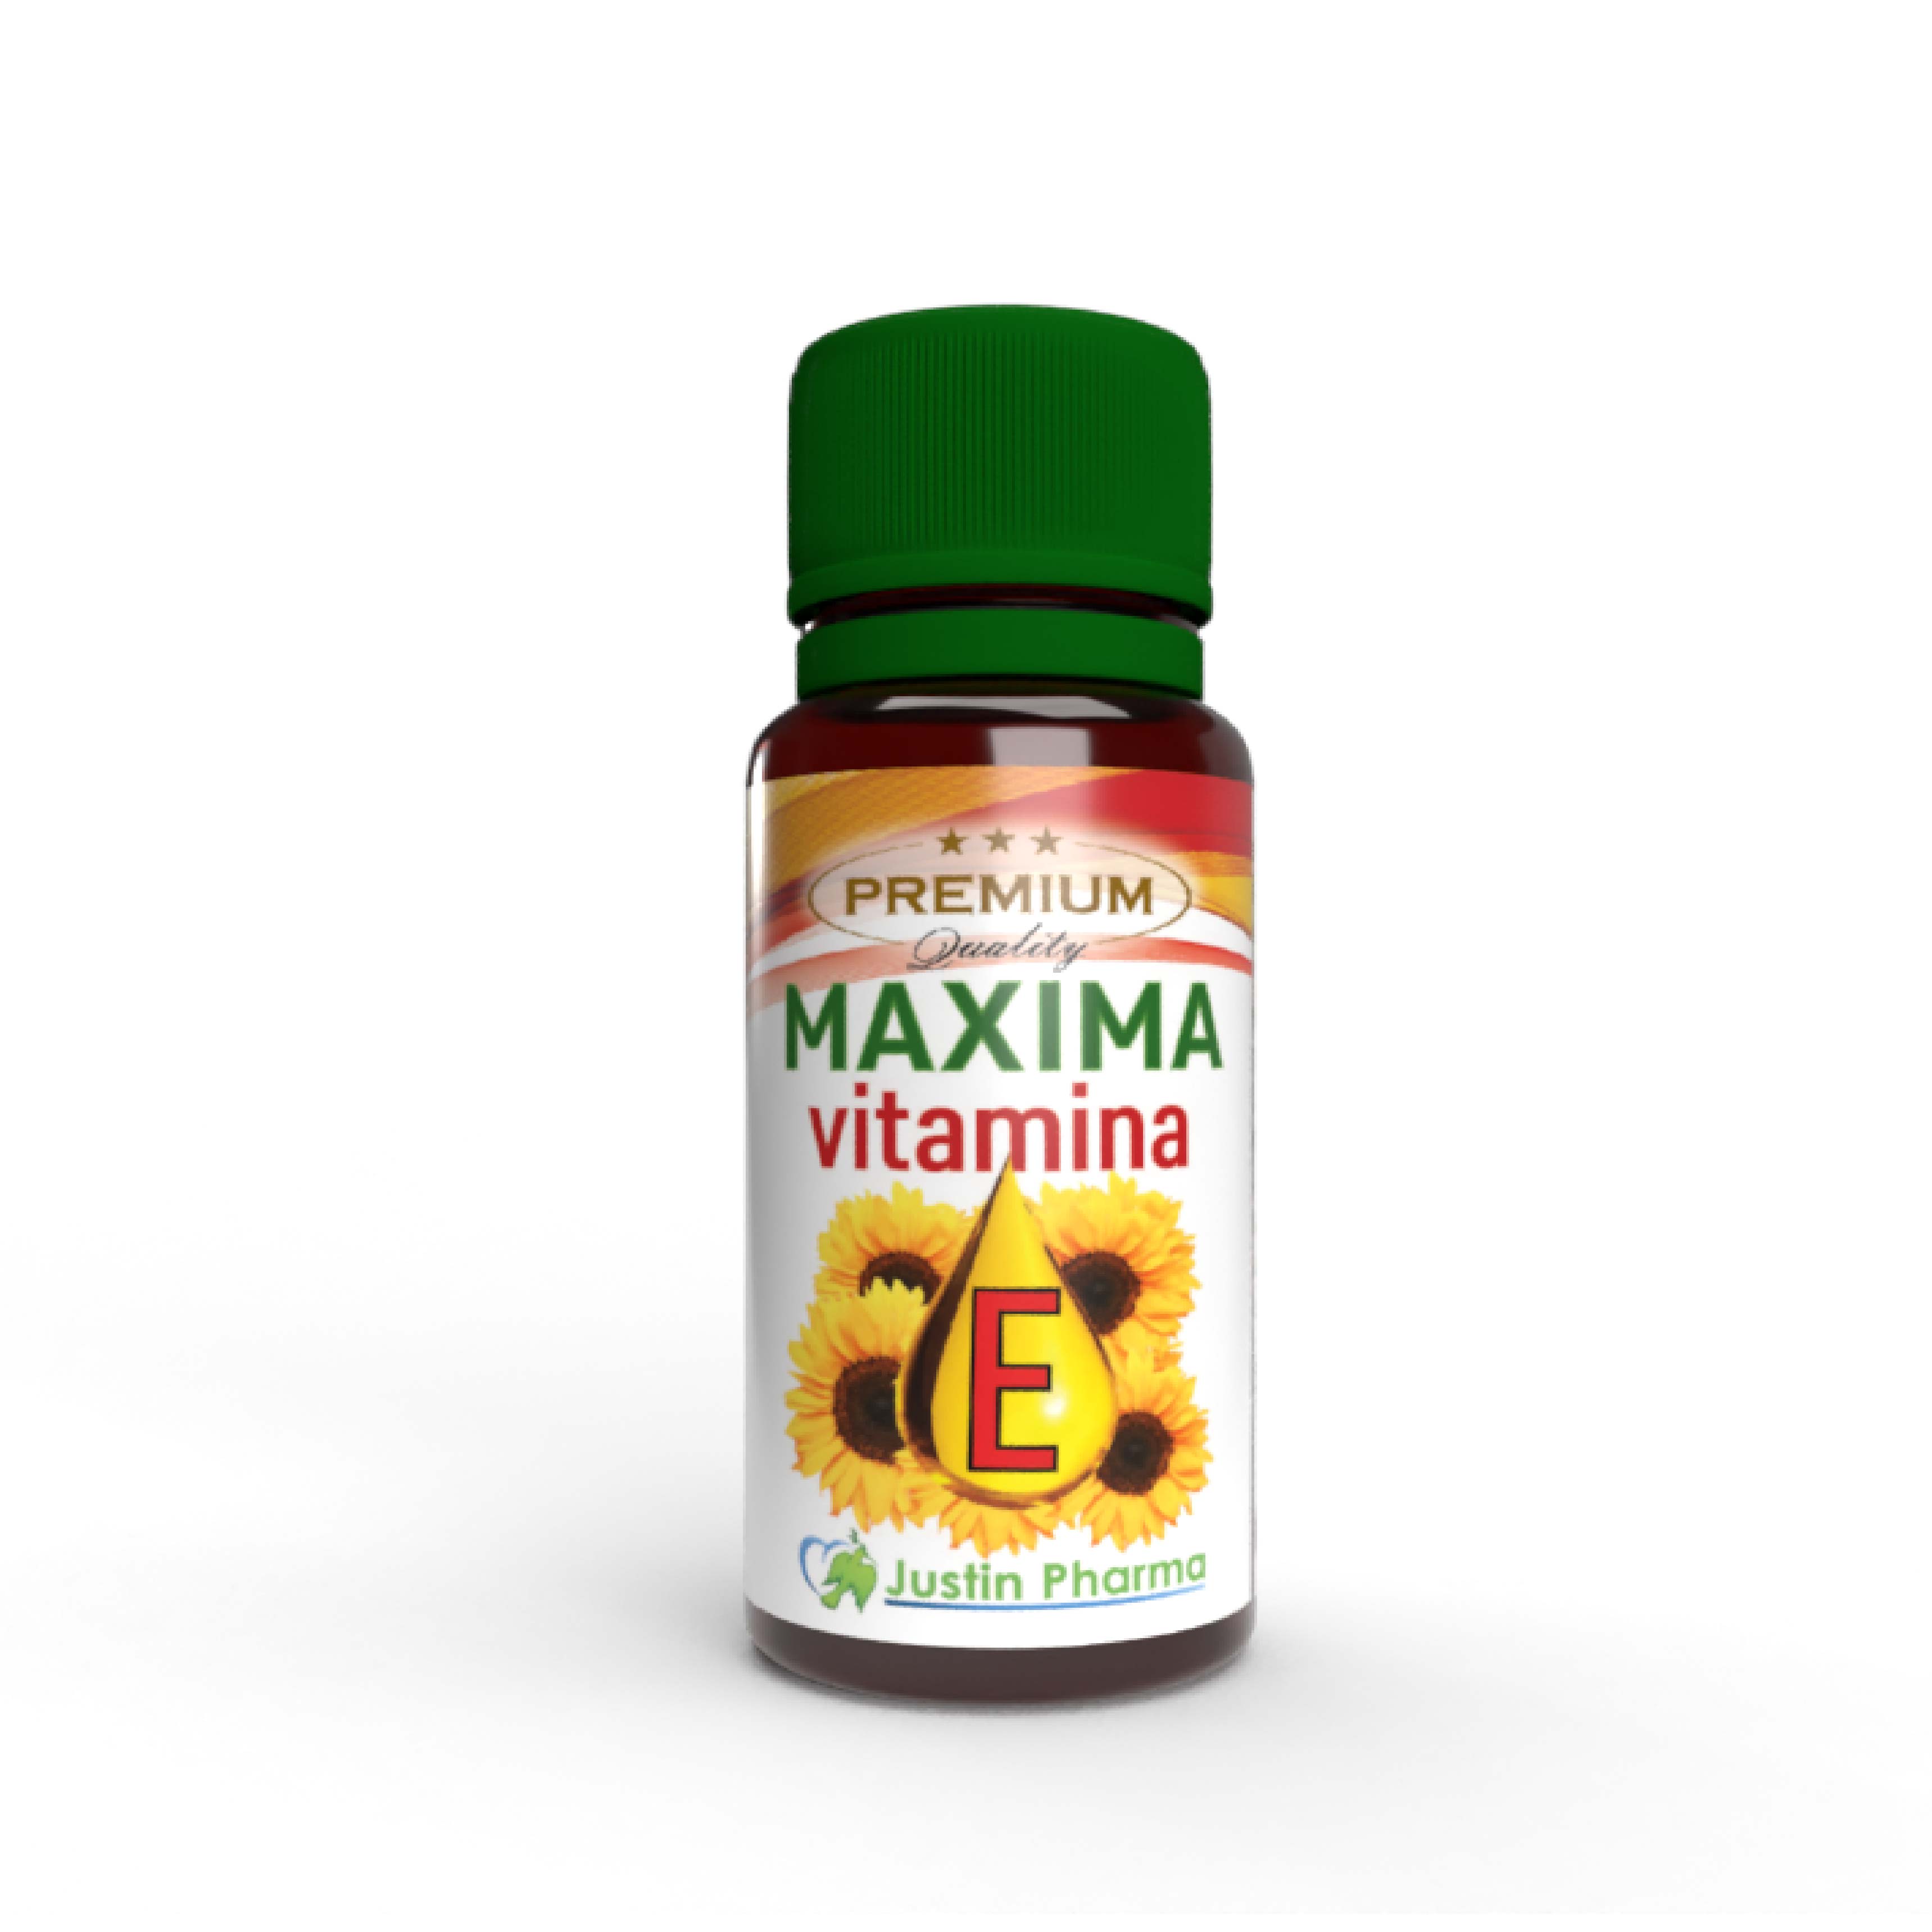 Vitamina E lichida, Maxima, 10 ml, Justin Pharma